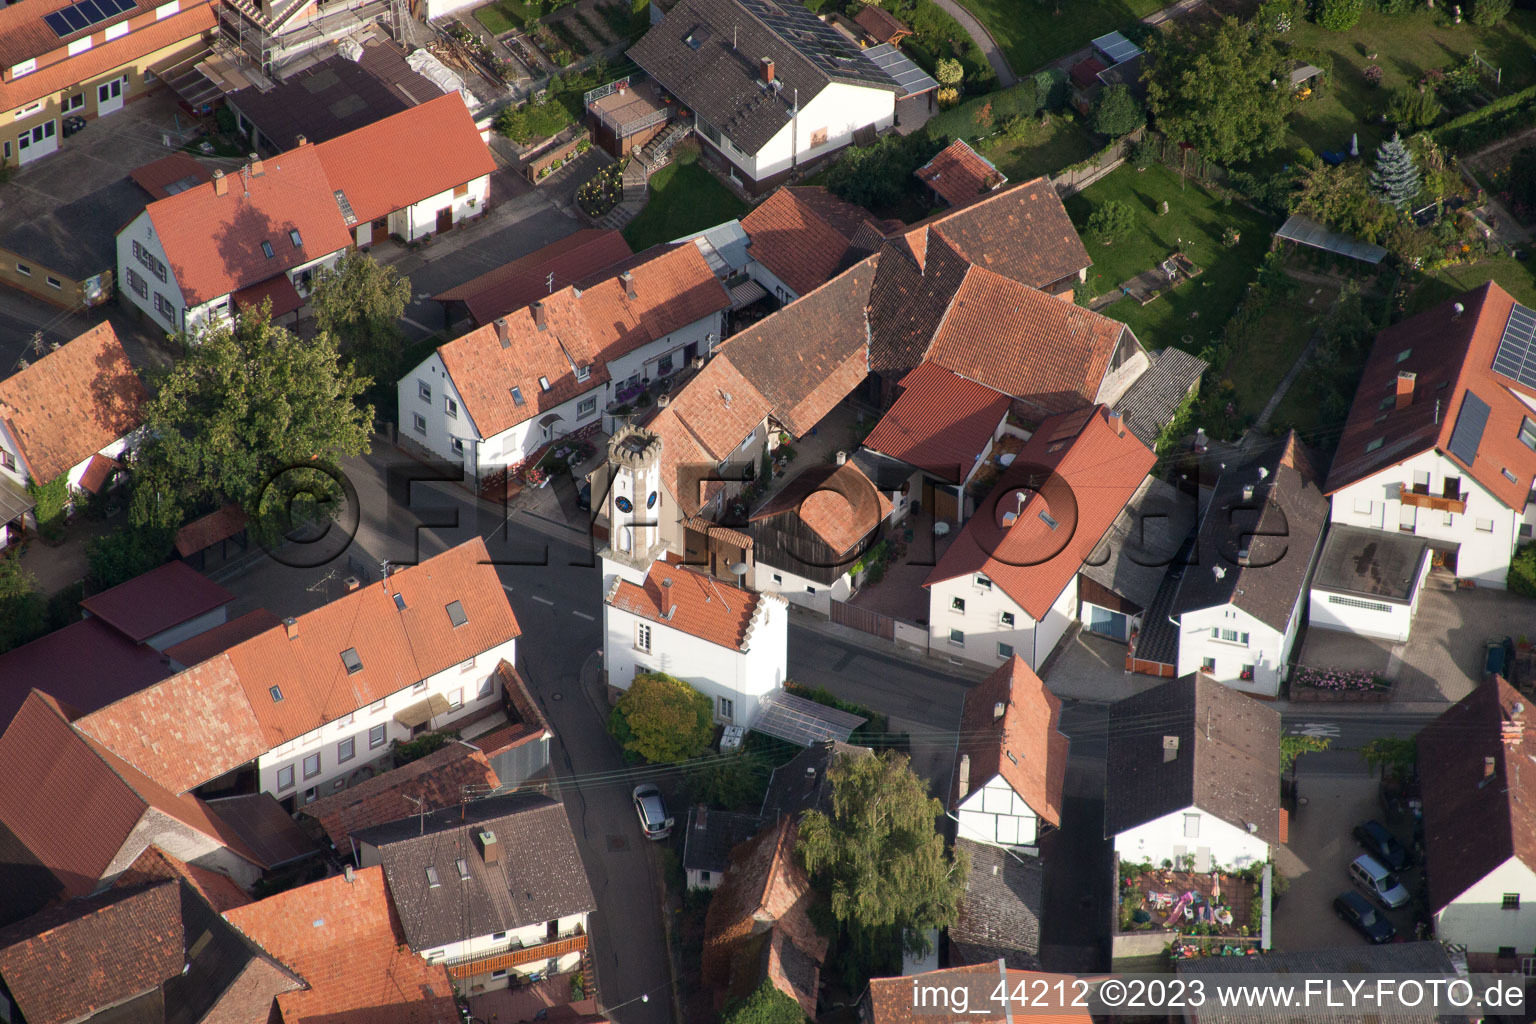 Oberhausen im Bundesland Rheinland-Pfalz, Deutschland von der Drohne aus gesehen